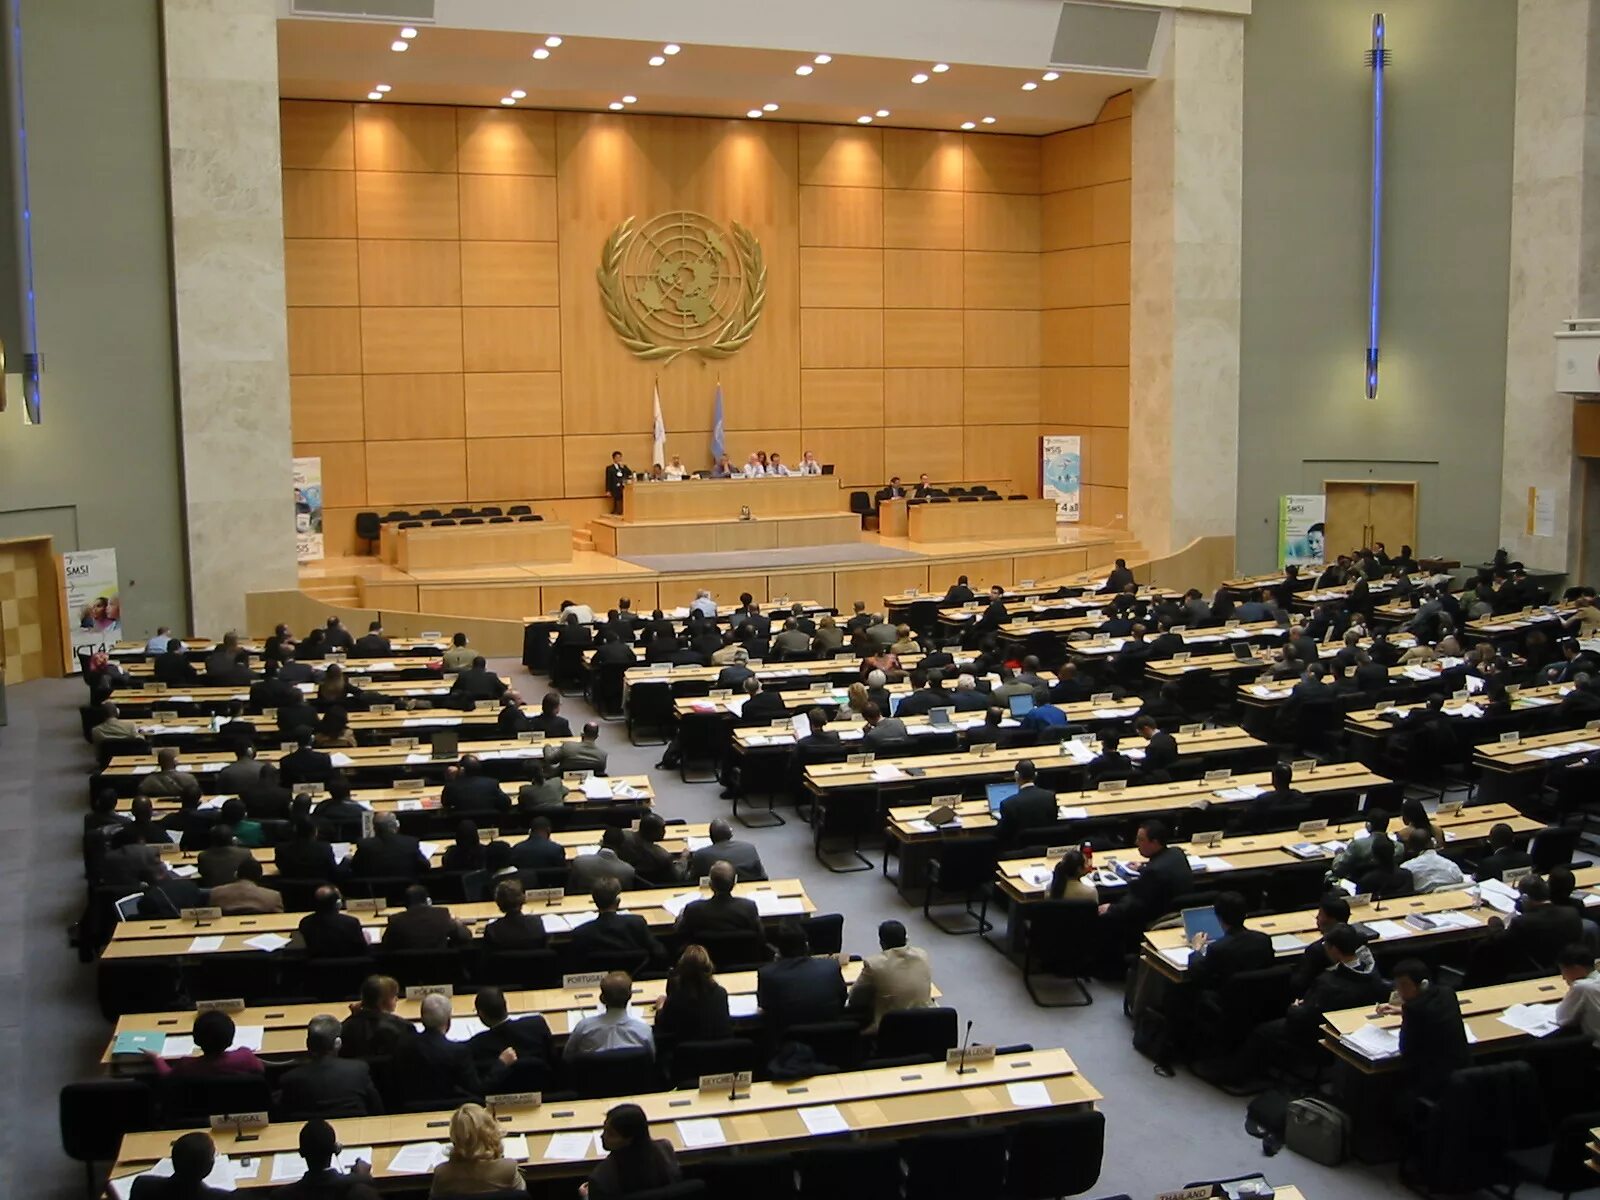 Швейцарская штаб квартира оон. Залы ООН Женева дворец наций. Зал заседаний ООН В Женеве. Отделение организации Объединённых наций в Женеве. Территория ООН В Женеве.